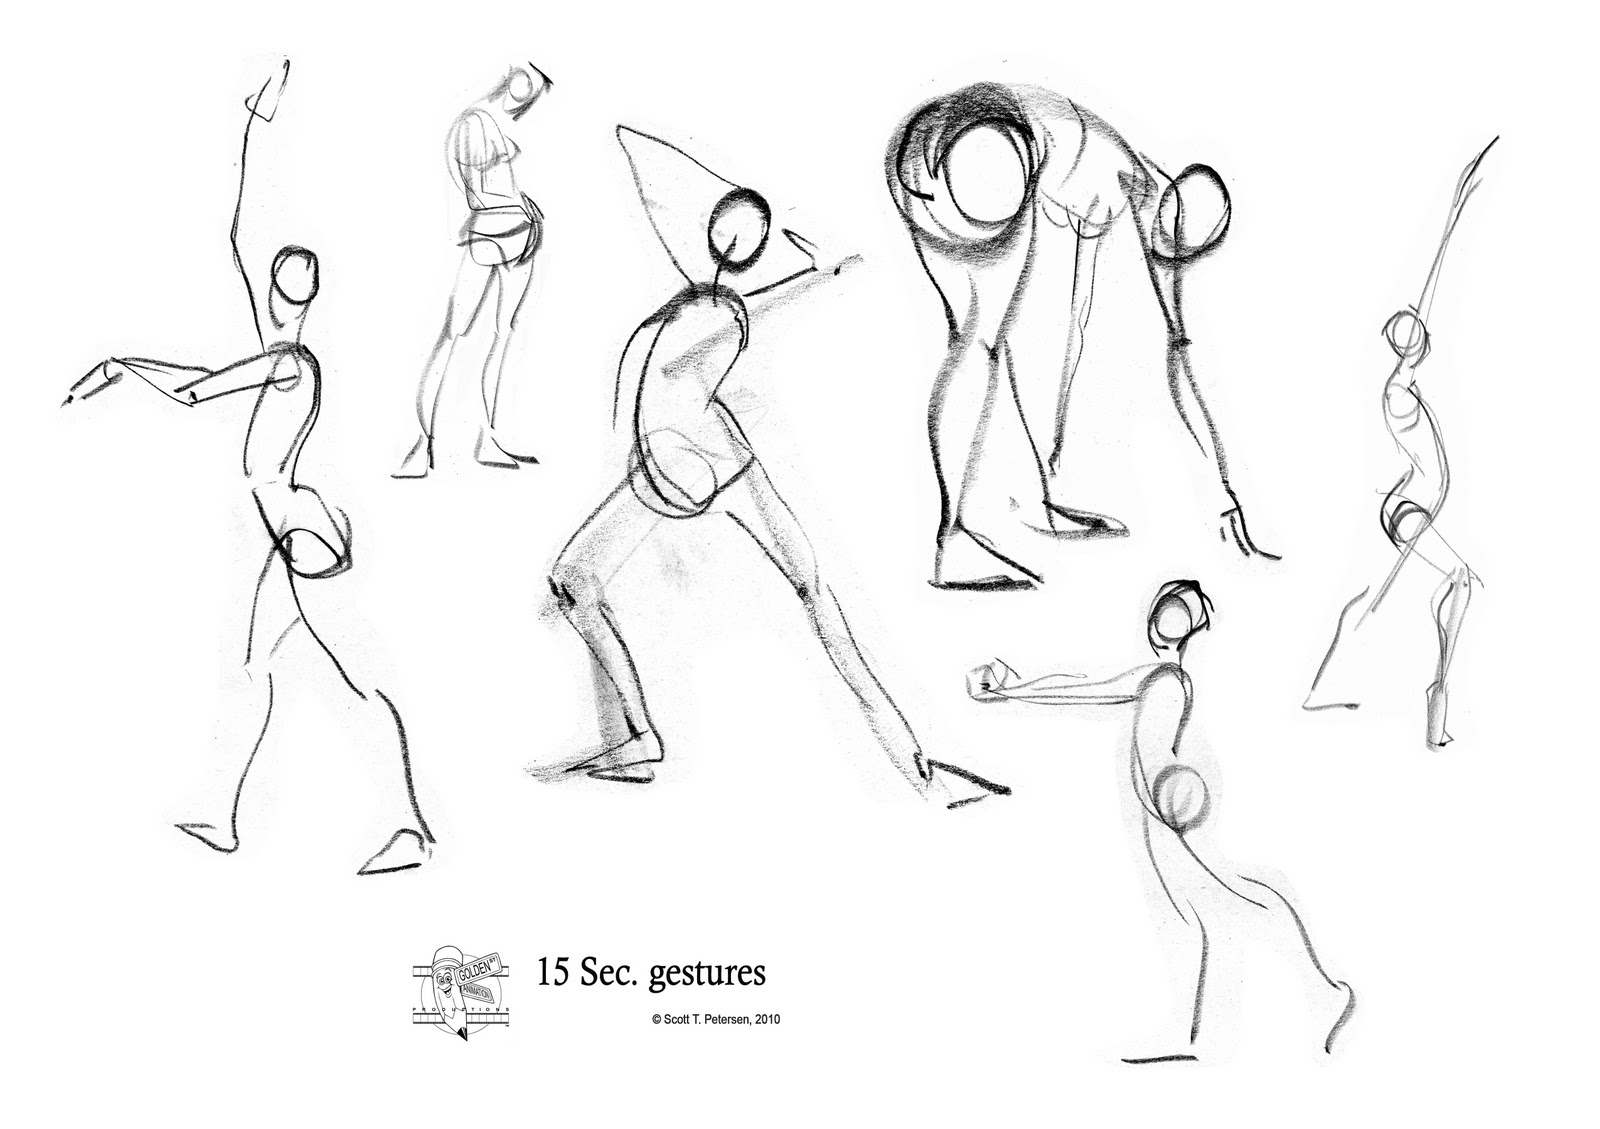 Scott T. Petersen's Figure drawings